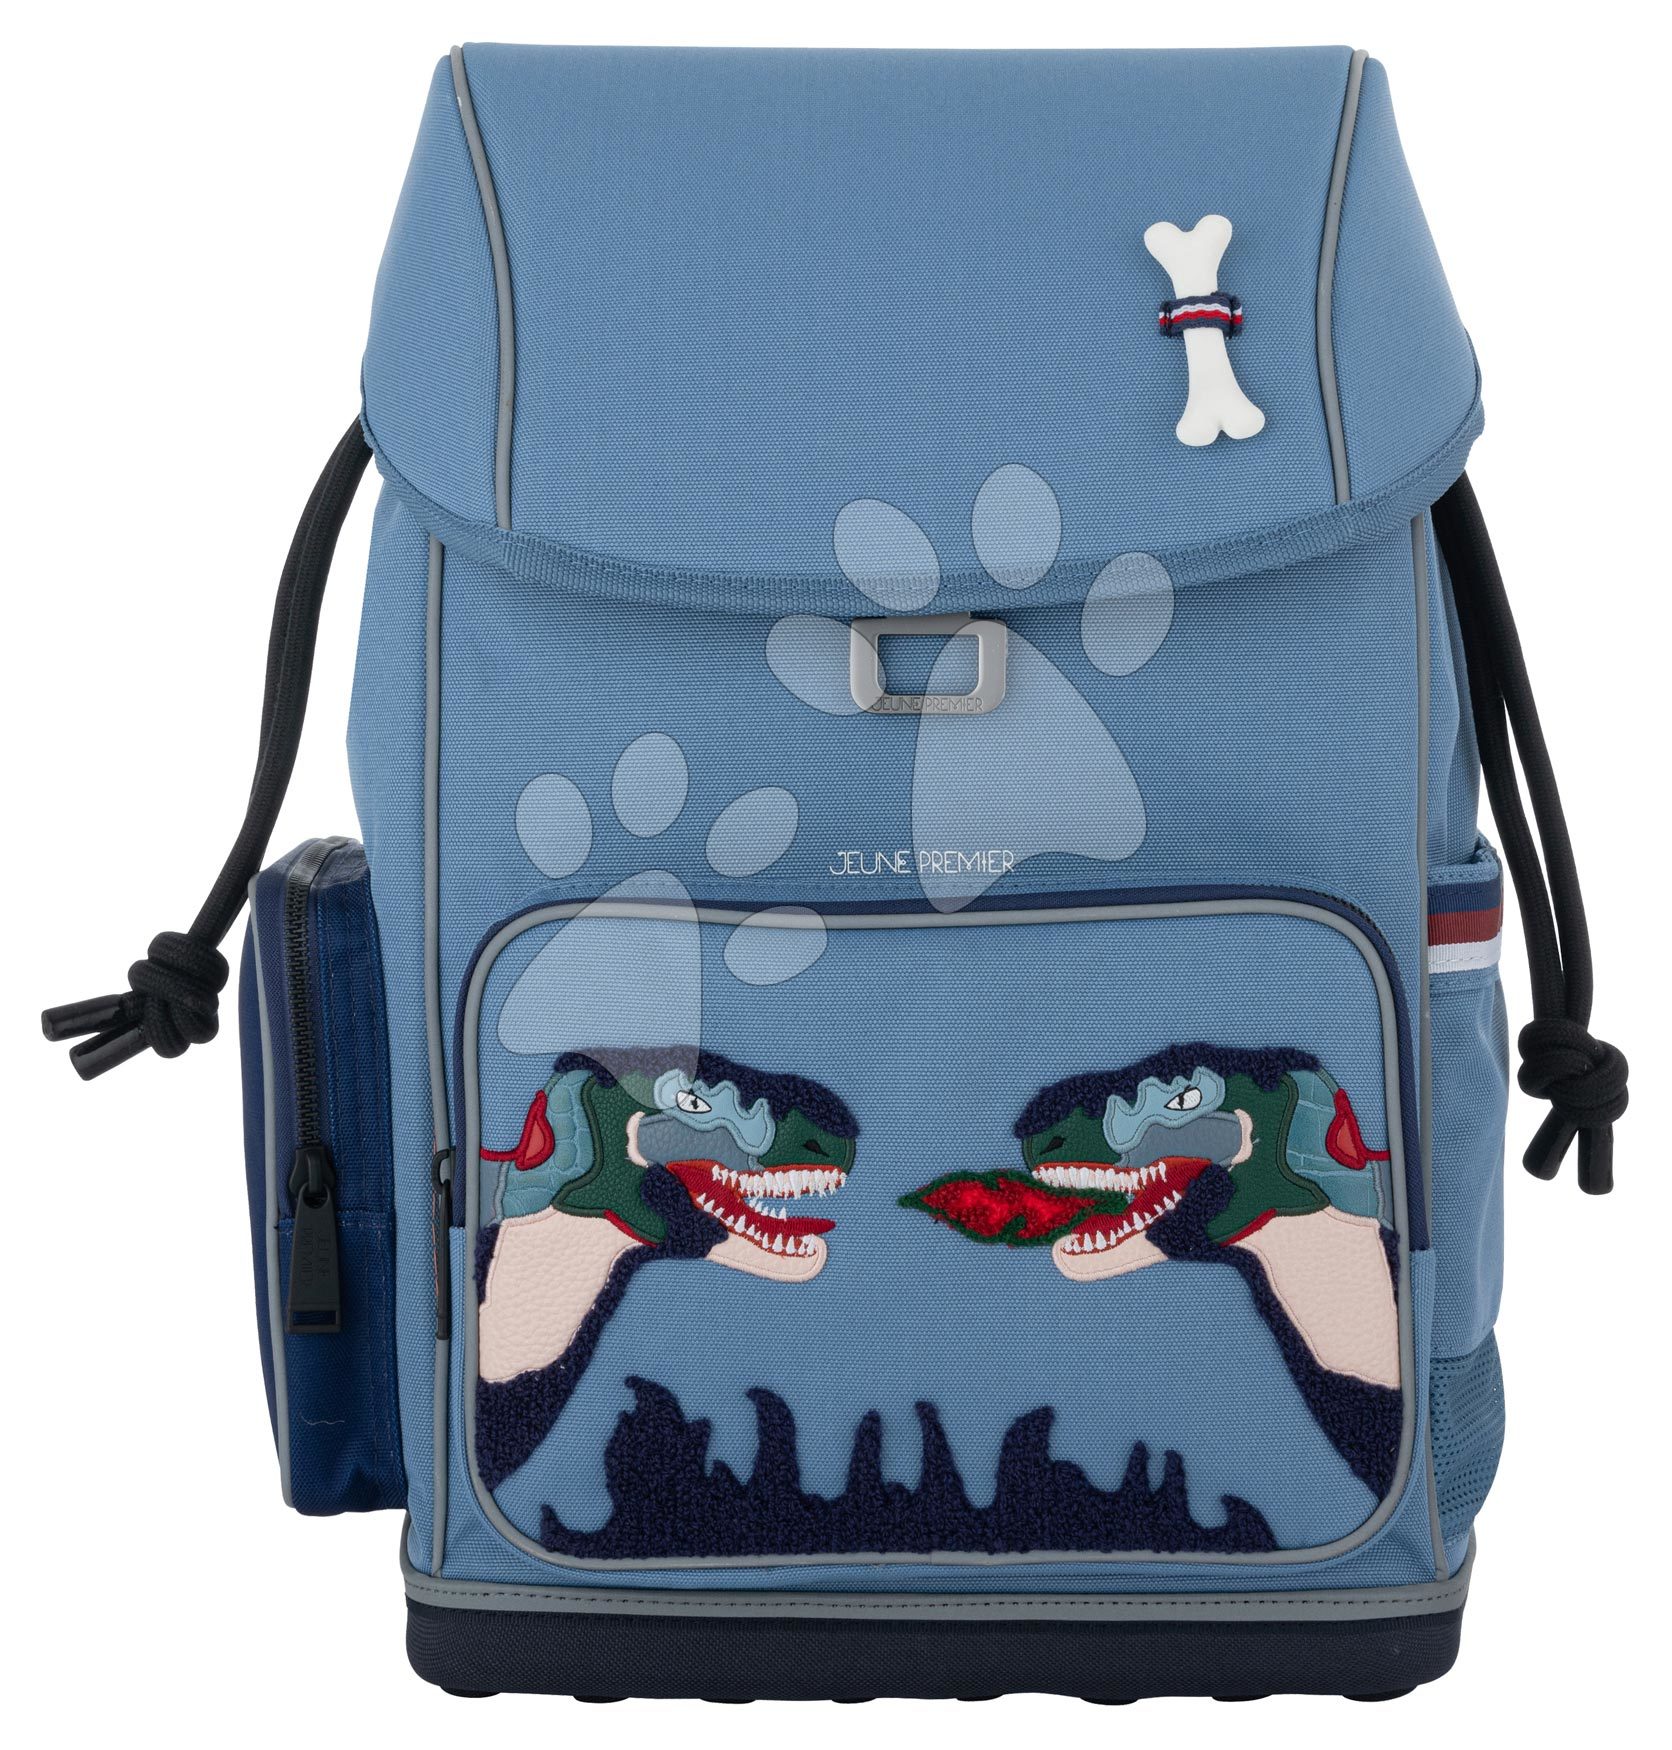 Iskolai hátizsák nagy Ergonomic Backpack Twin Rex Jeune Premier ergonomikus luxus kivitel 39*26 cm gyerek játék webáruház - játék rendelés online Kreatív és didaktikus játékok | Iskolai kellékek | Iskolai hátizsákok